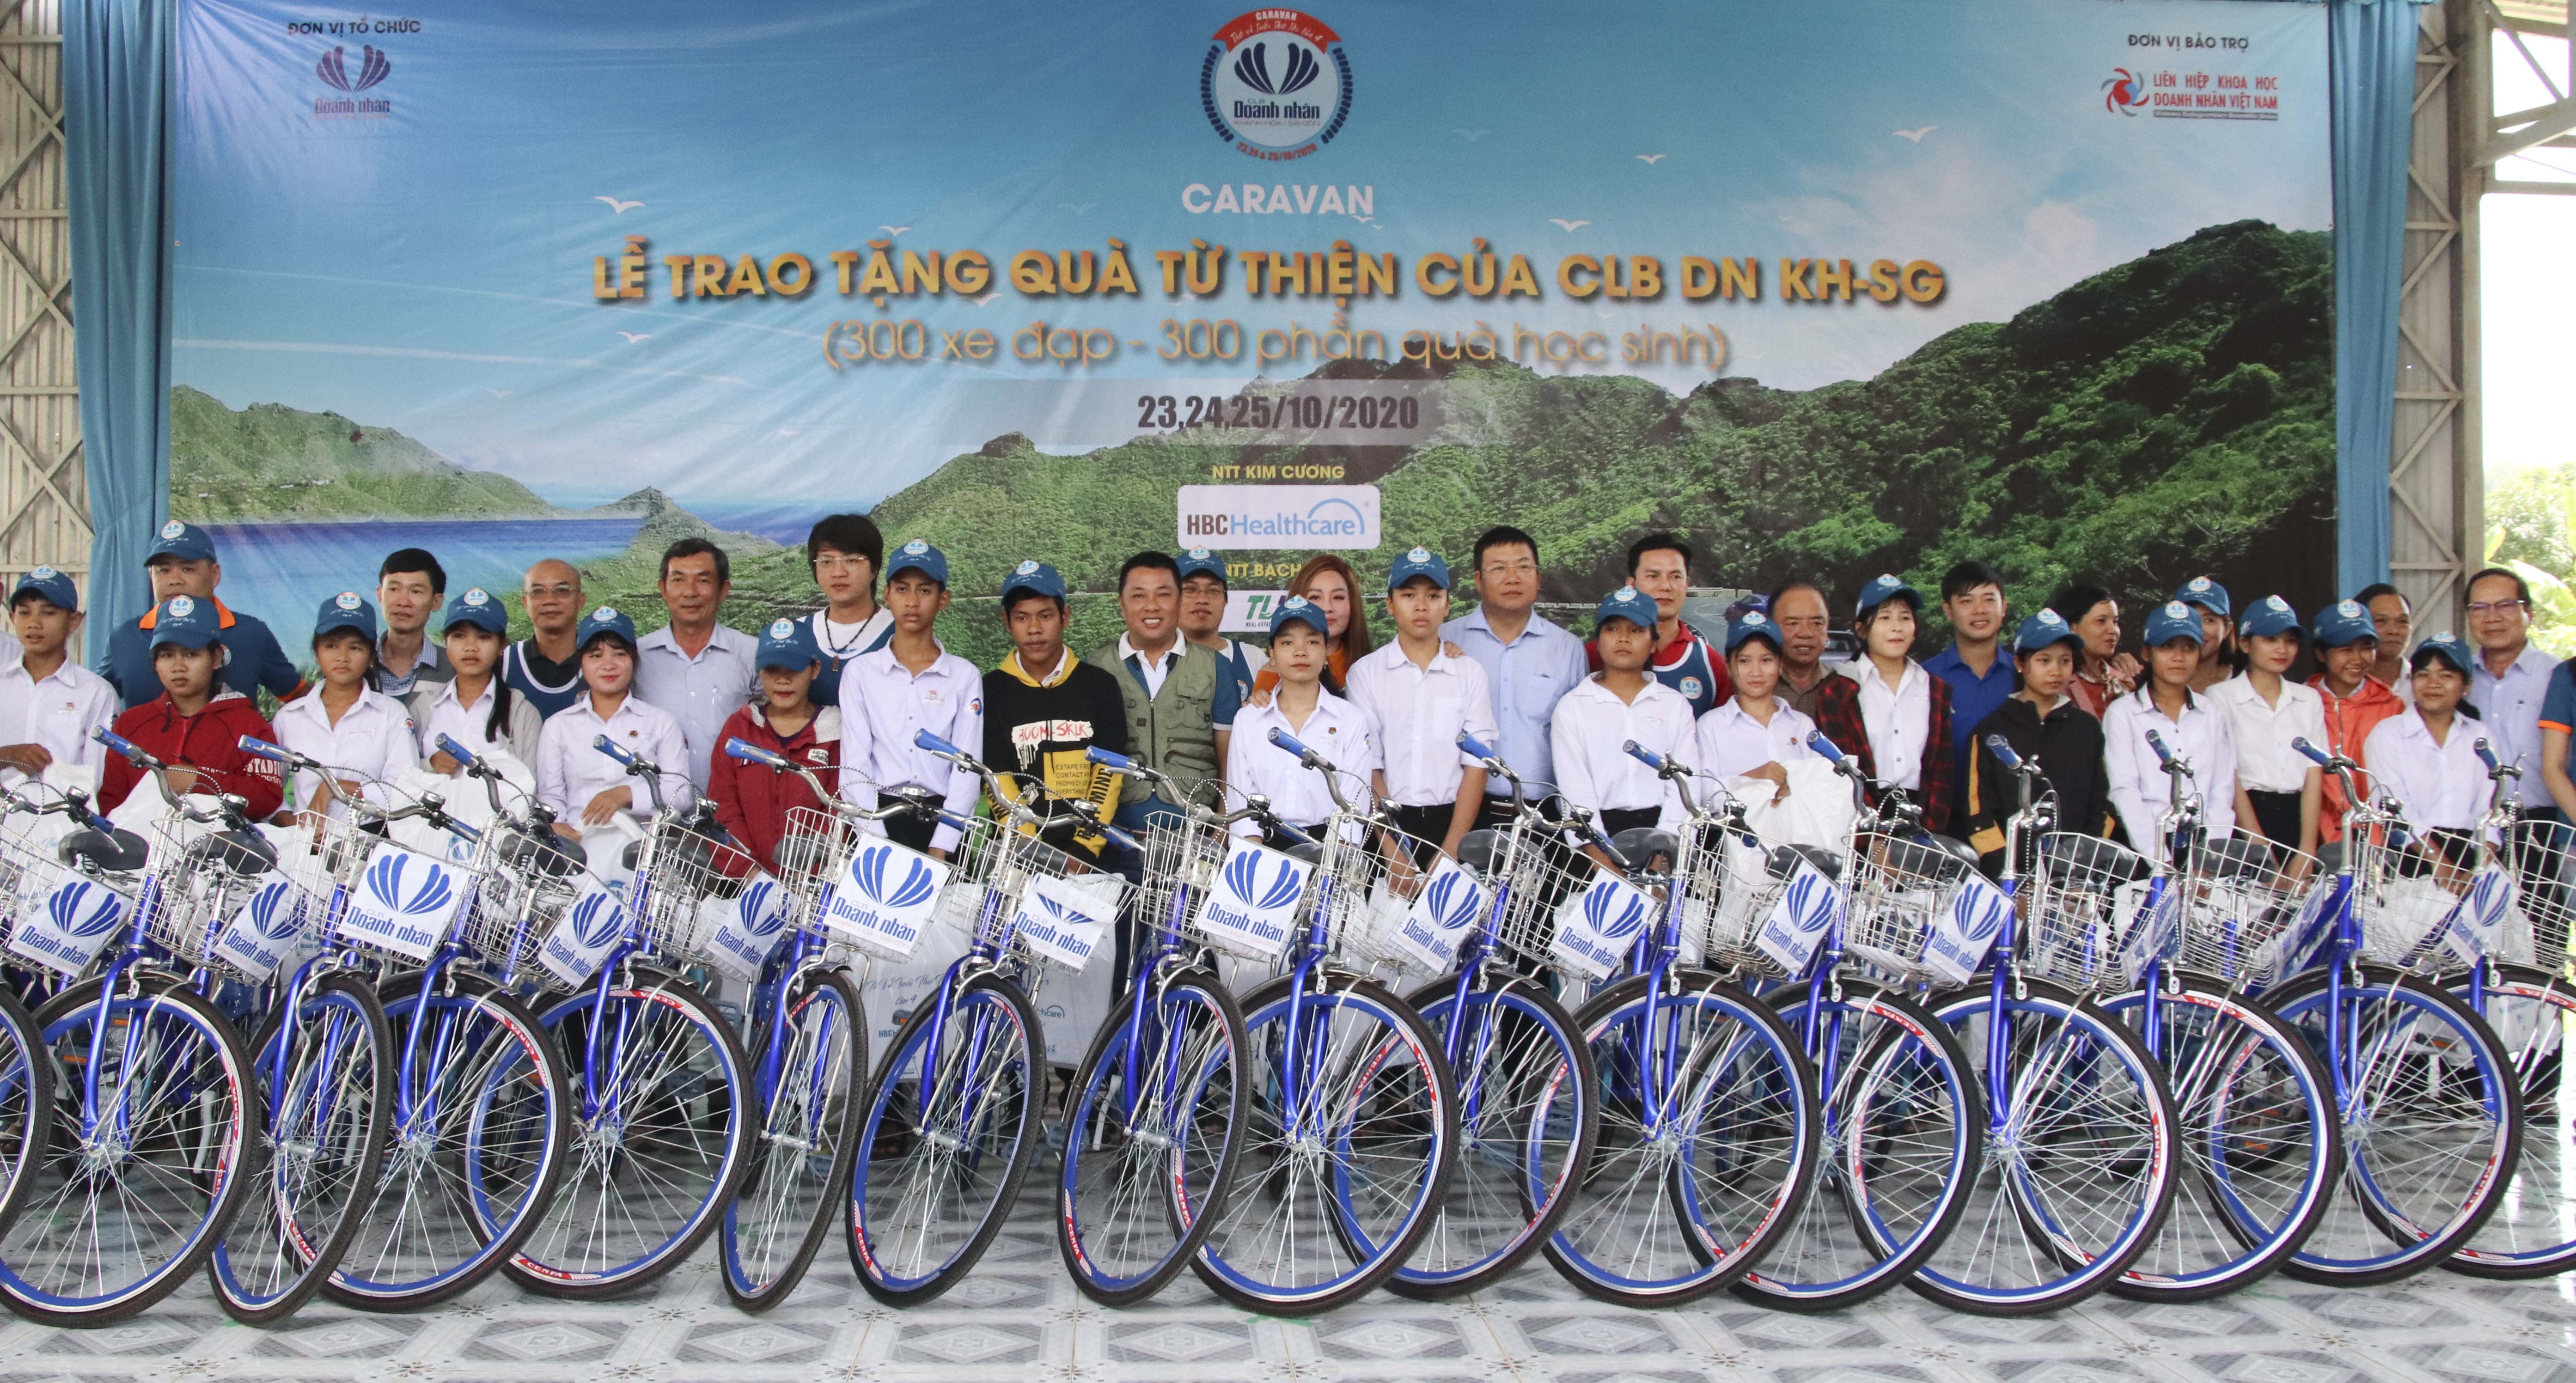 Trao xe đạp cho học sinh nghèo Khánh Vĩnh và Diên Khánh chương trình diễn ra năm 2020.